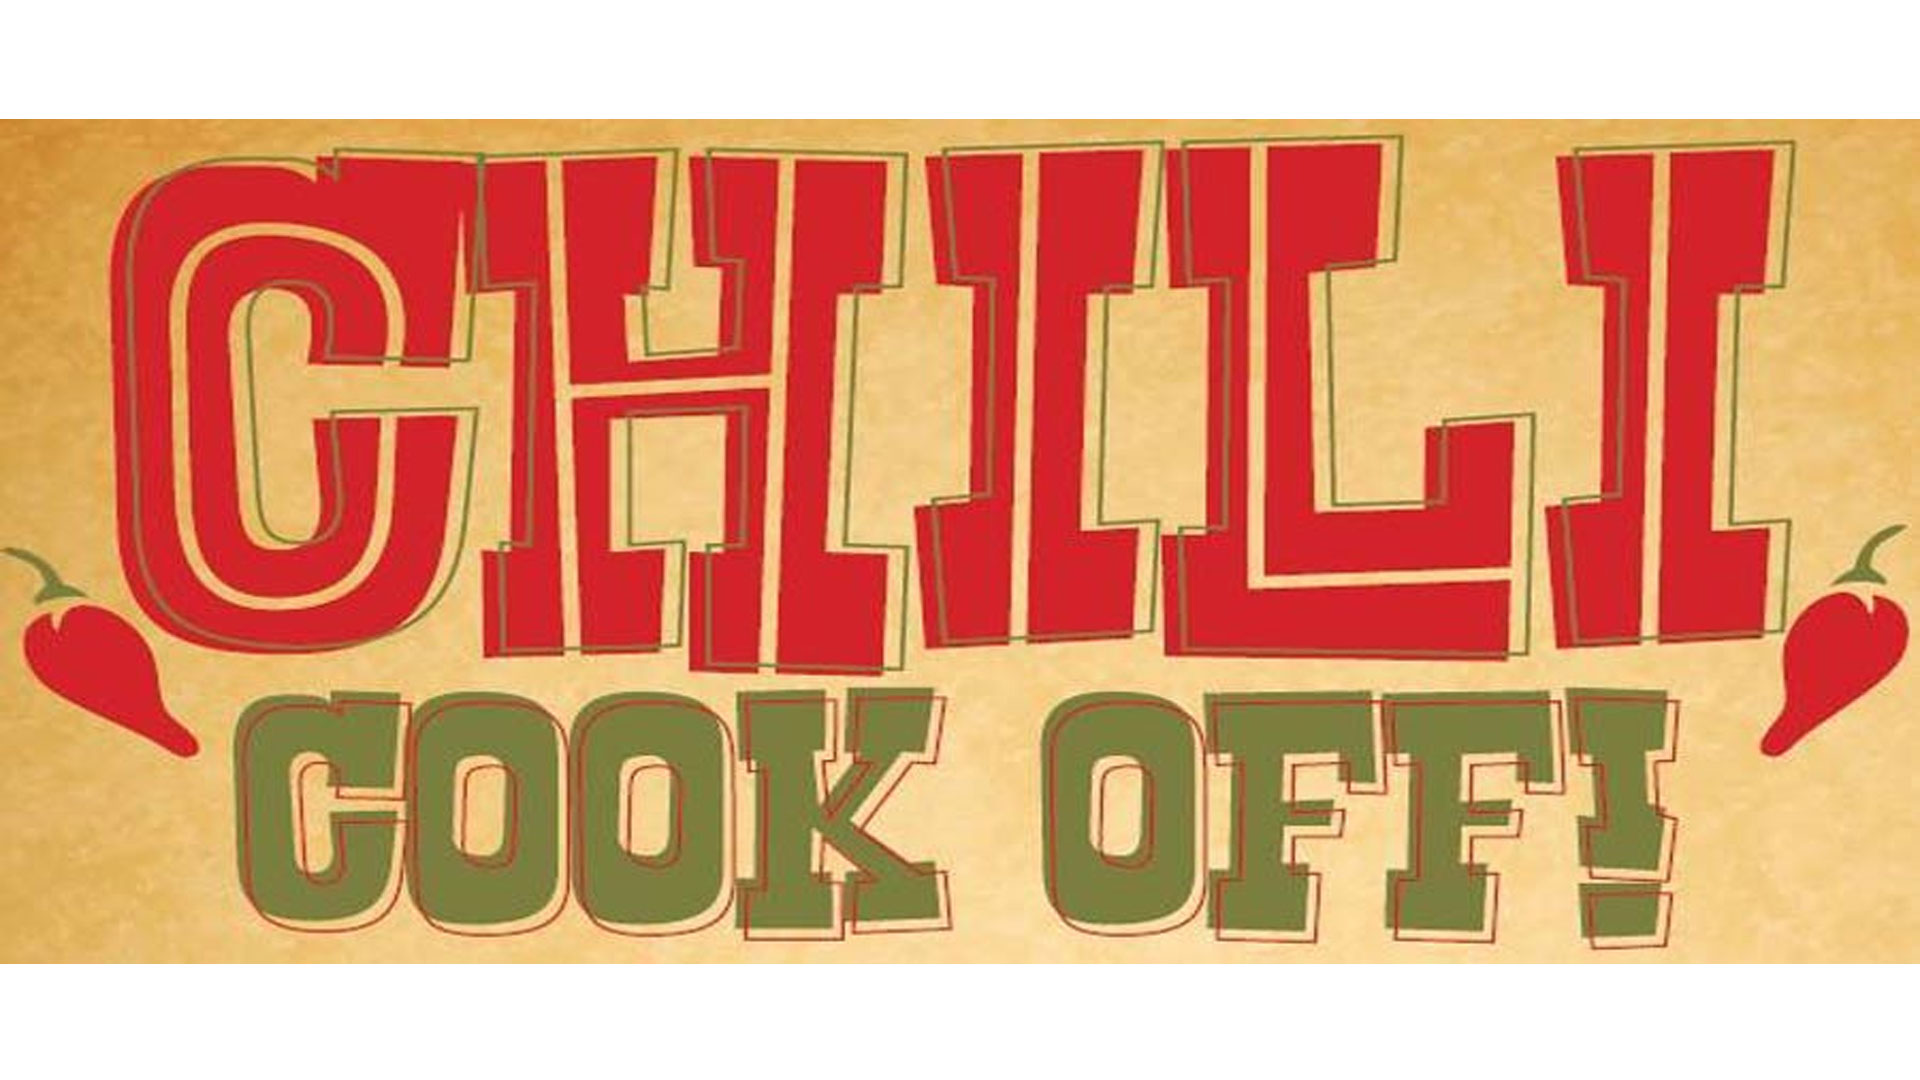 texas-chili-cook-off-good-news